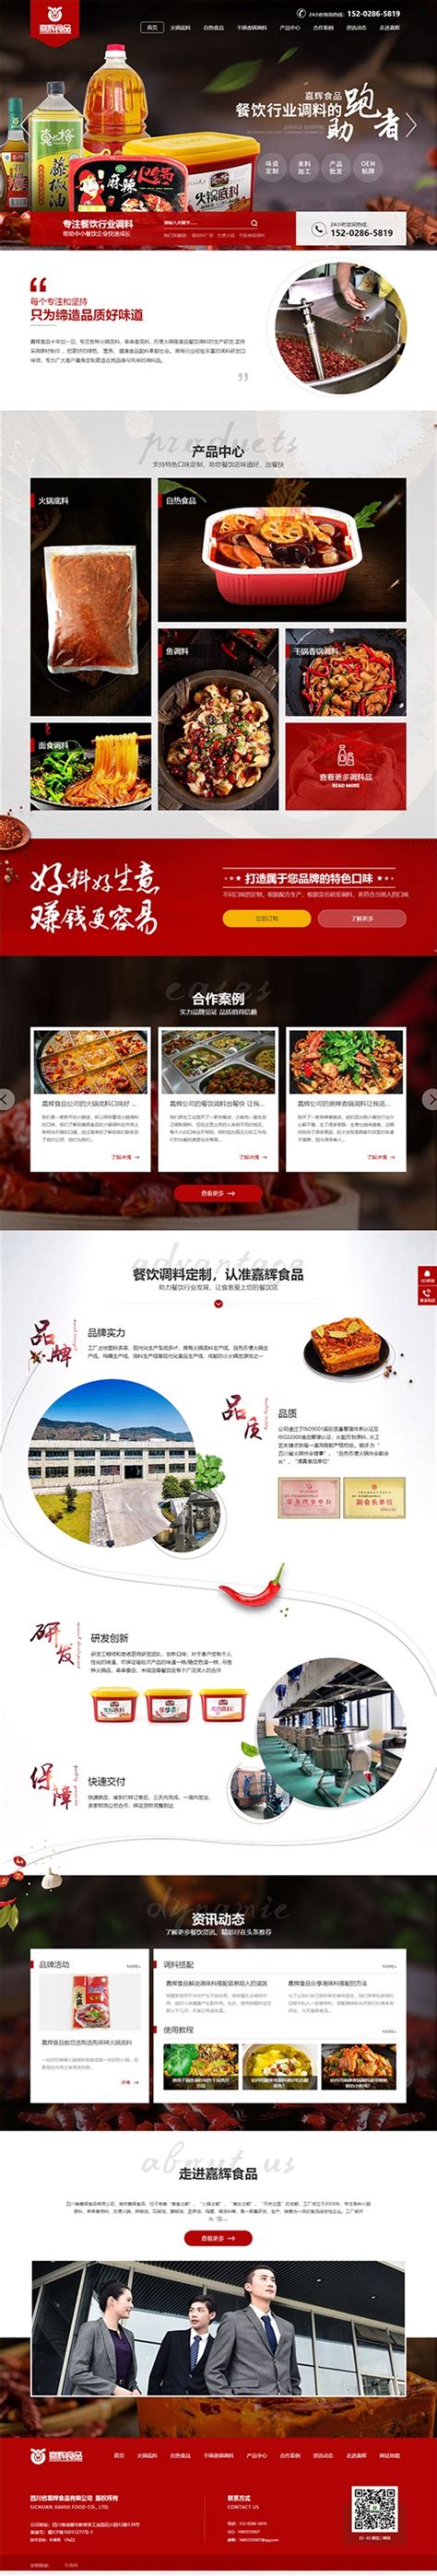 天下食安-中国食品报社中国安全食品推广办公室